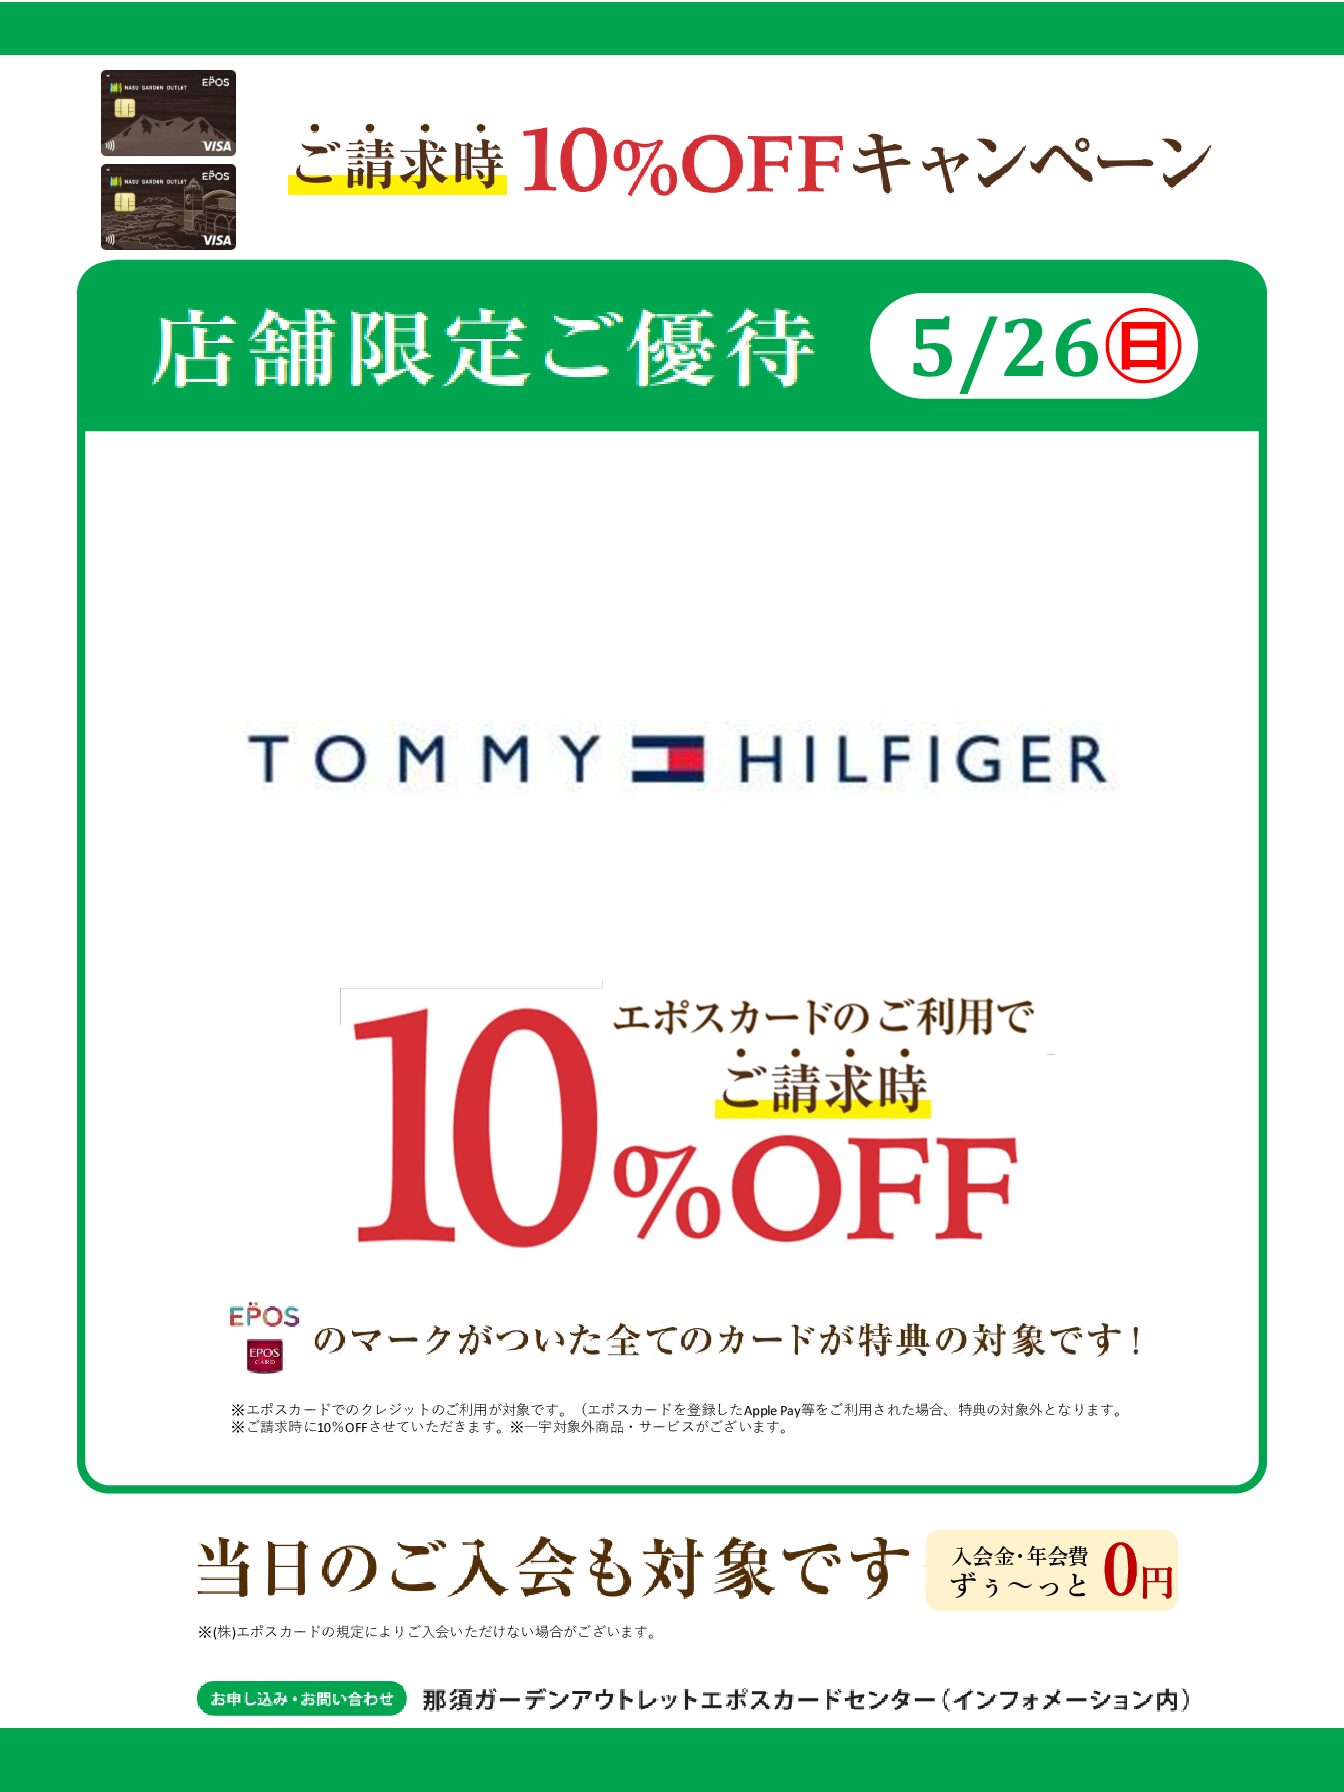 5/26(日) トミー ヒルフィガー 那須店限定 エポスカード ご請求時10%OFF キャンペーン